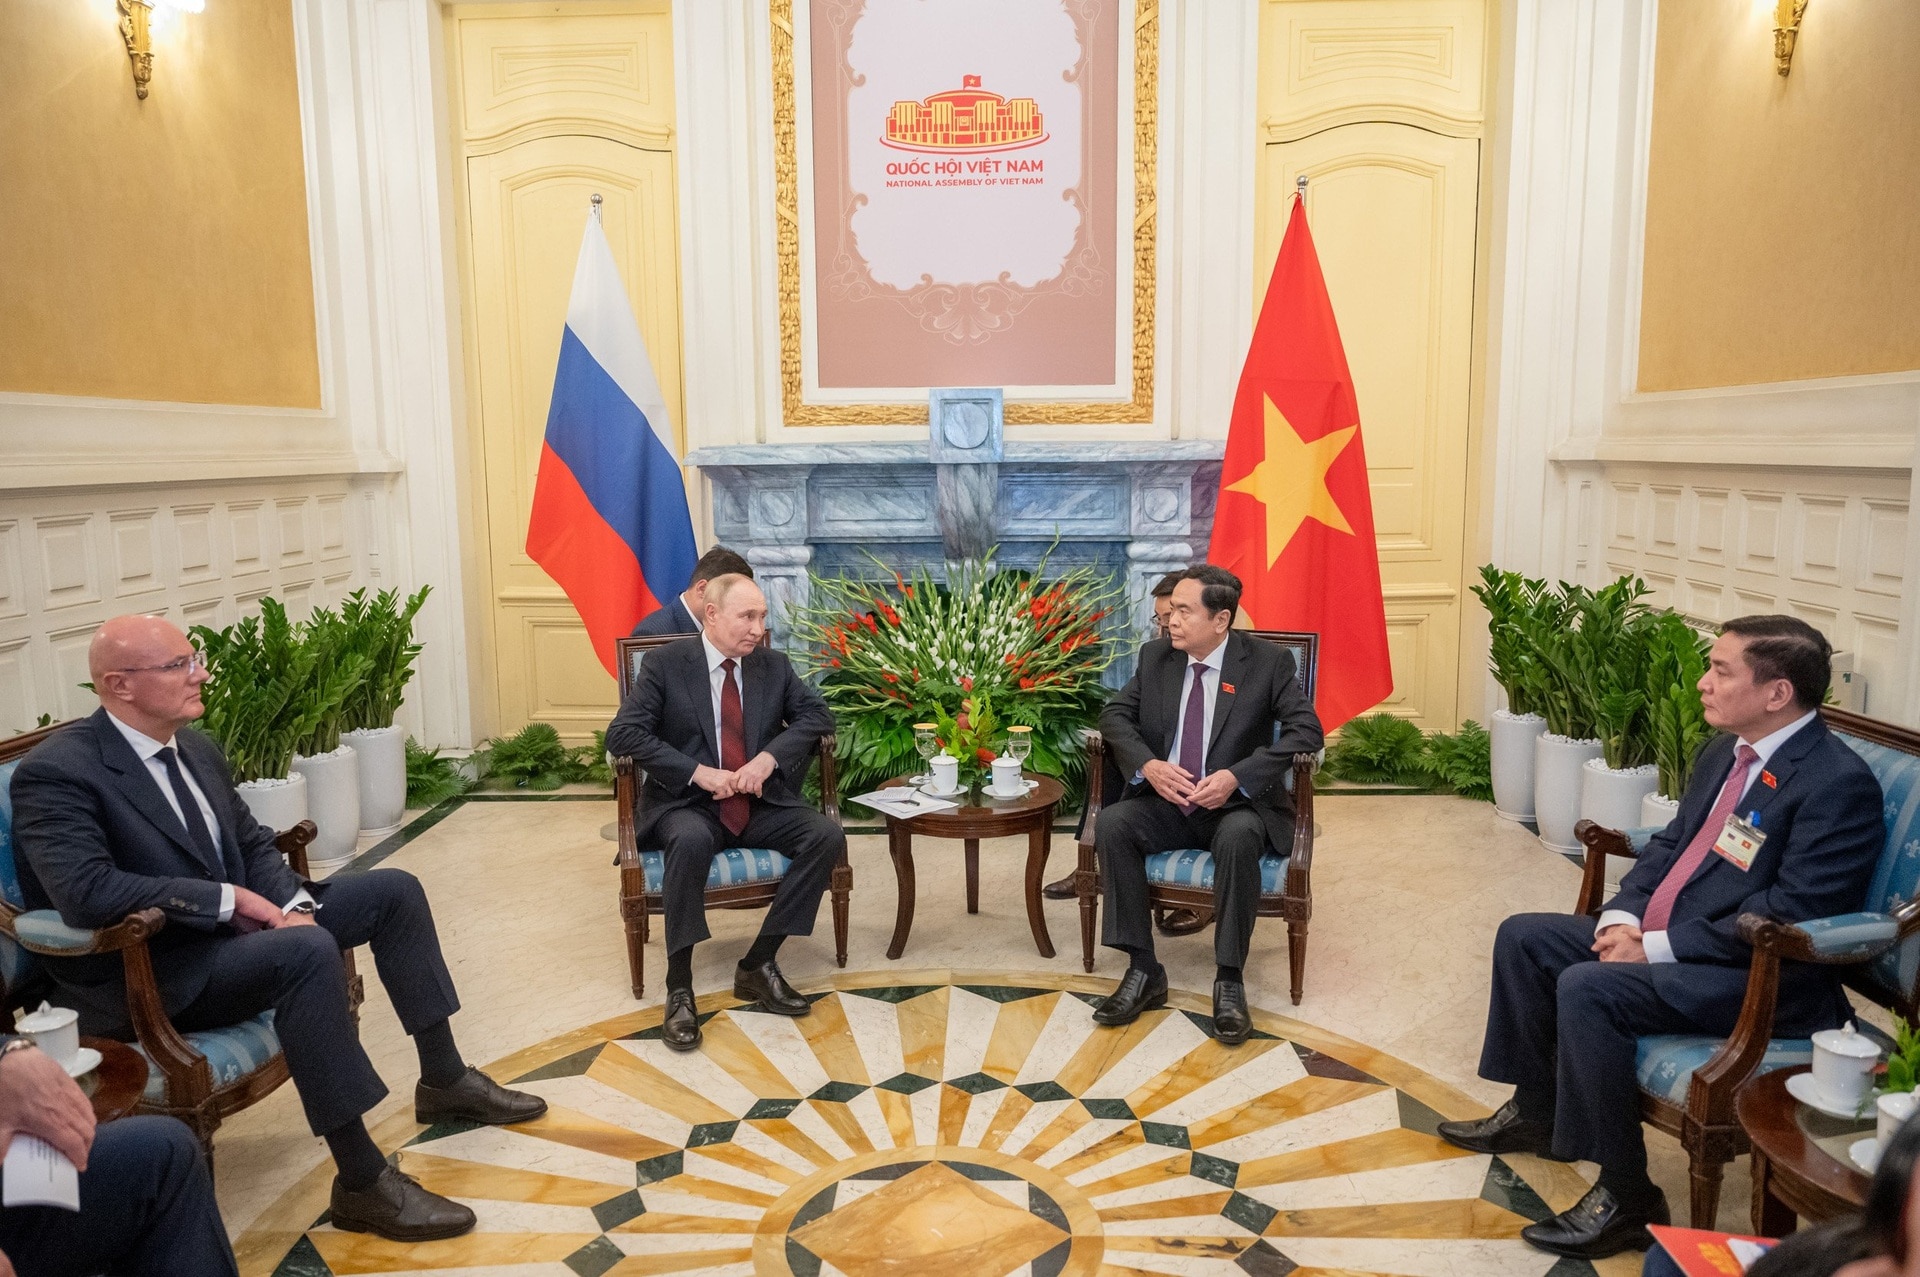 22 giờ bận rộn của Tổng thống Putin trong chuyến thăm Việt Nam - 16